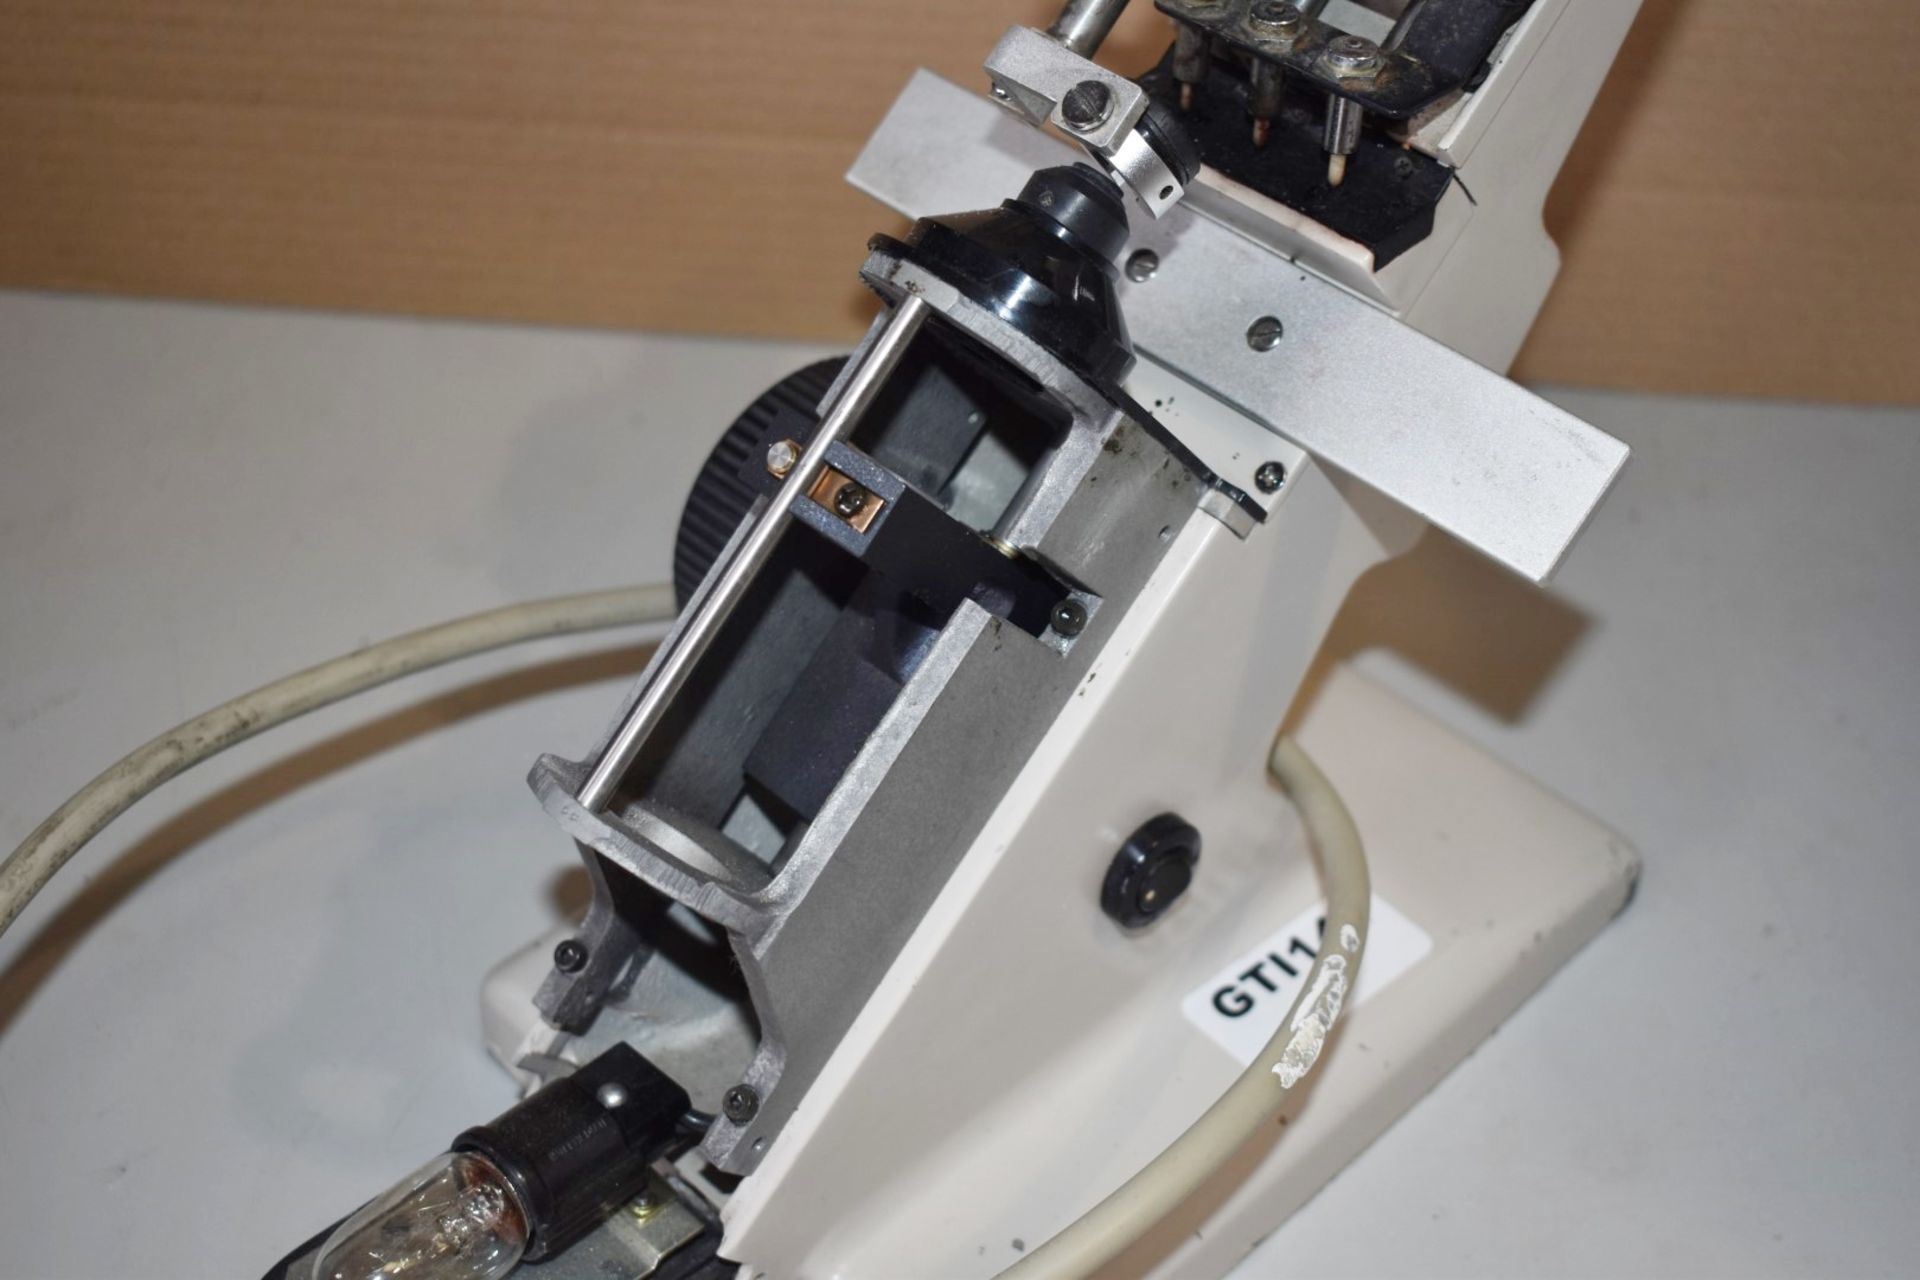 1 x Nidek Lens Meter - Model LM-100240 - Made in Japan - Ref: GTI141 - CL645 - Location: - Image 10 of 11